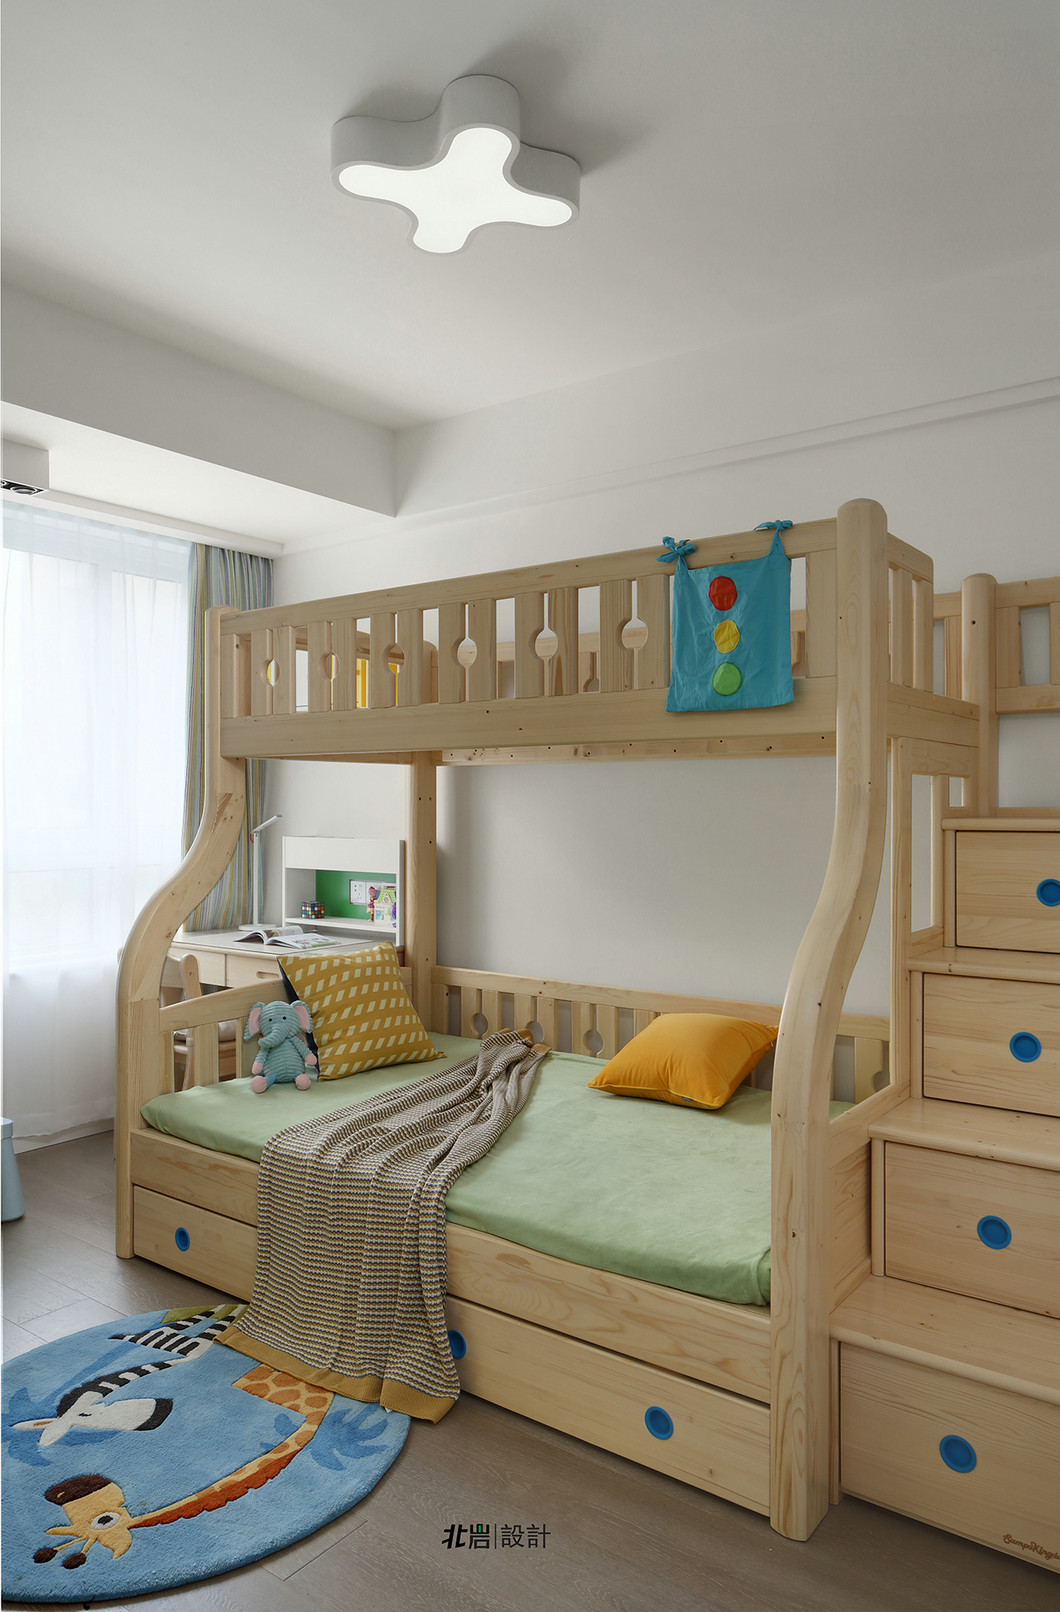 次卧放置了高低床，床体底部和楼梯处都设计了收纳，方便放置衣服和玩具